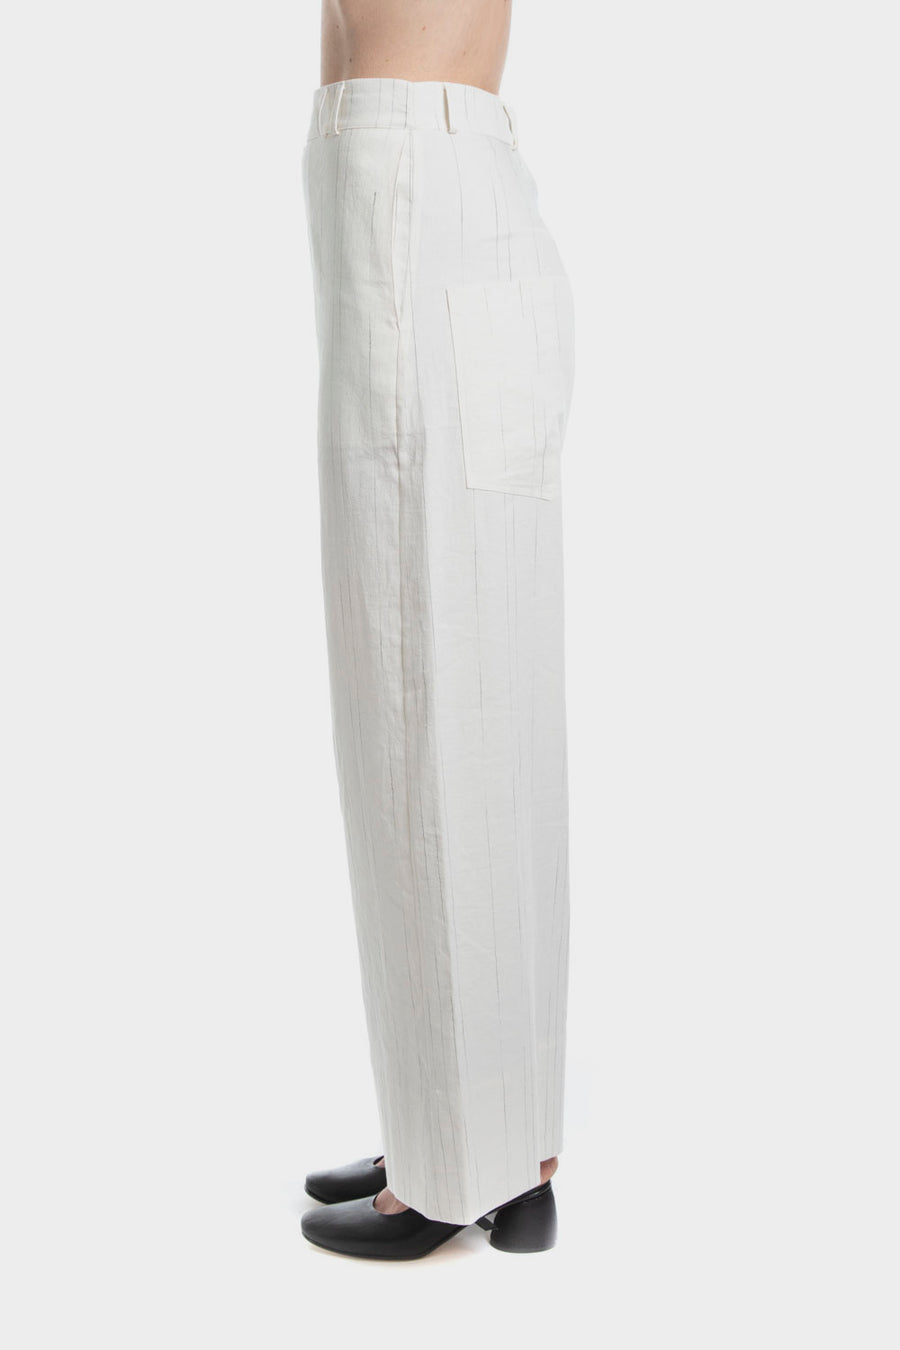 Pantalone Serie Numerica in lino e cotone SN895